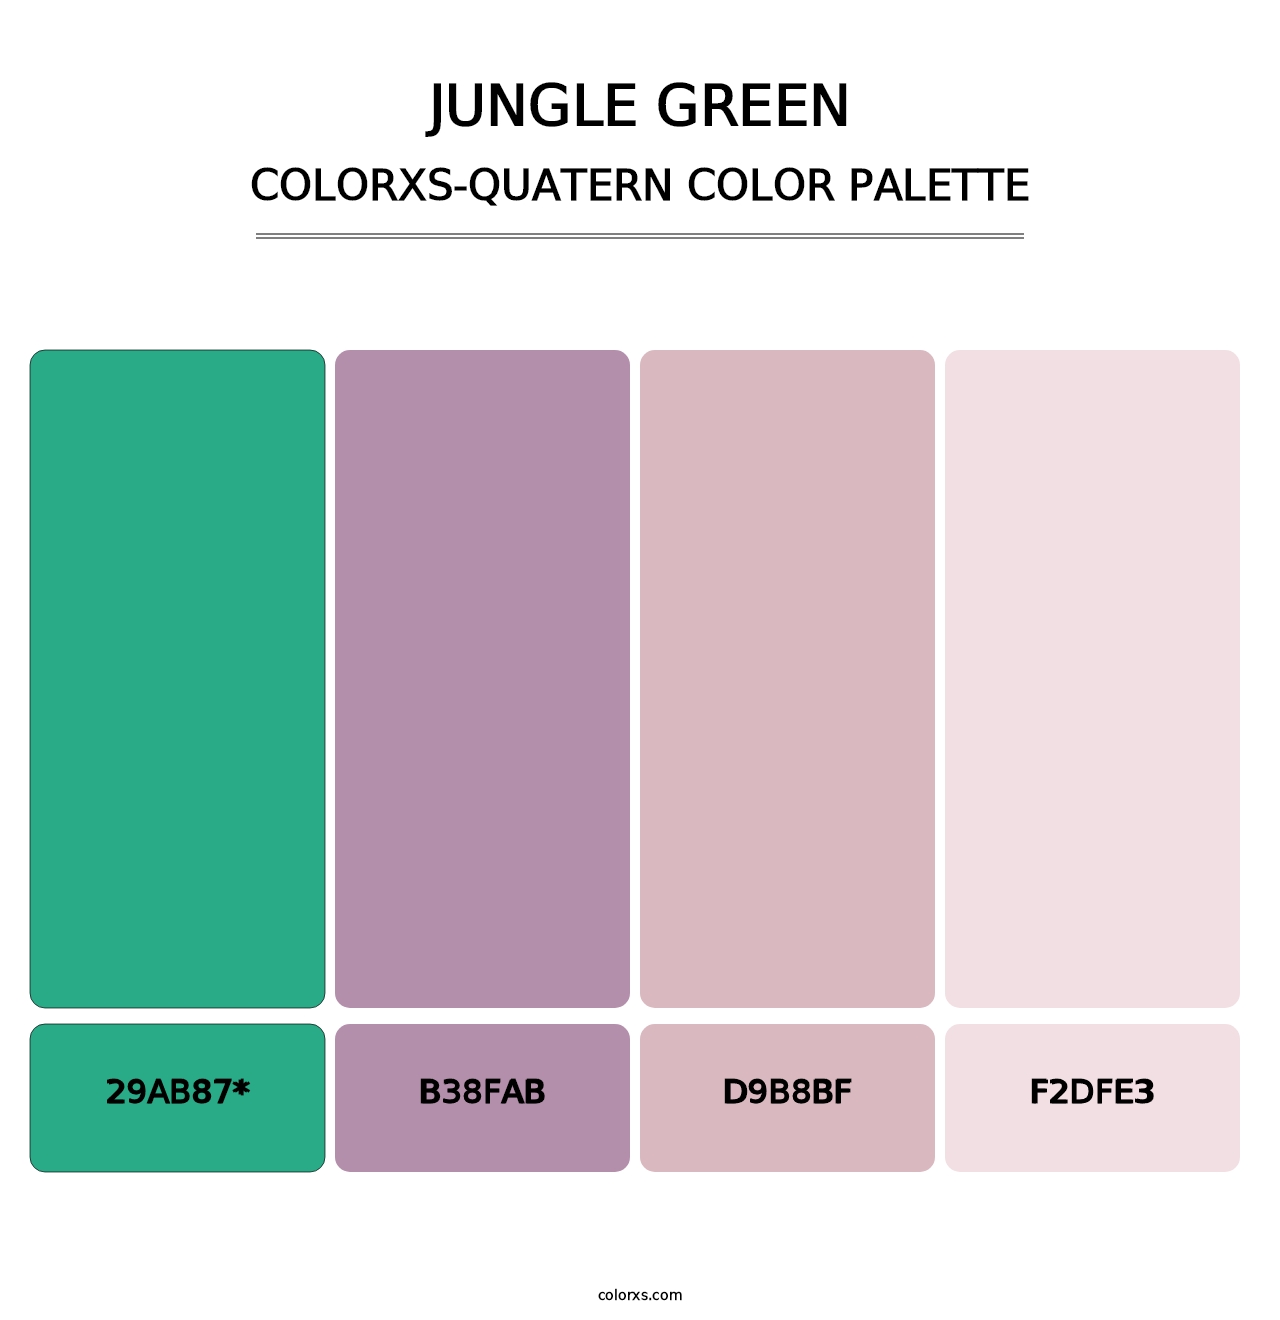 Jungle Green - Colorxs Quatern Palette